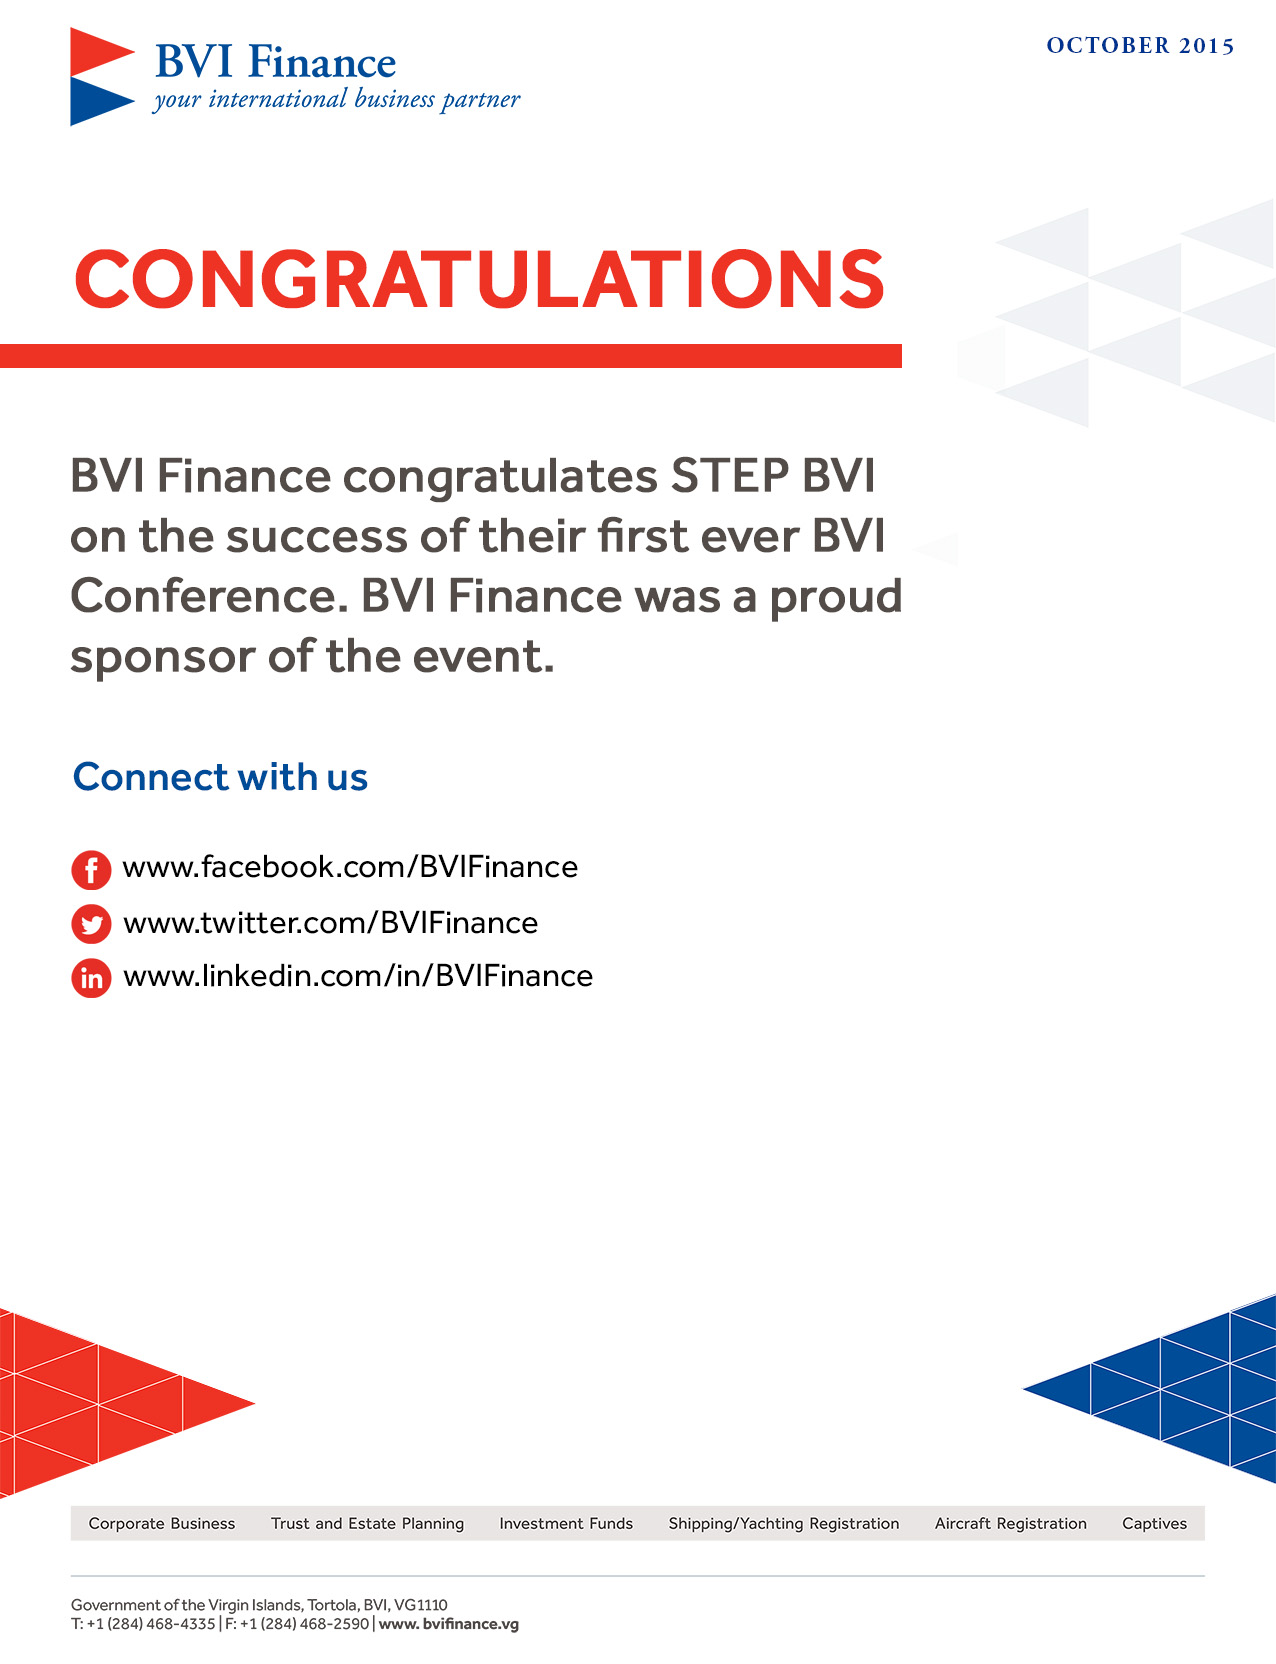 Congratulations to STEP BVI